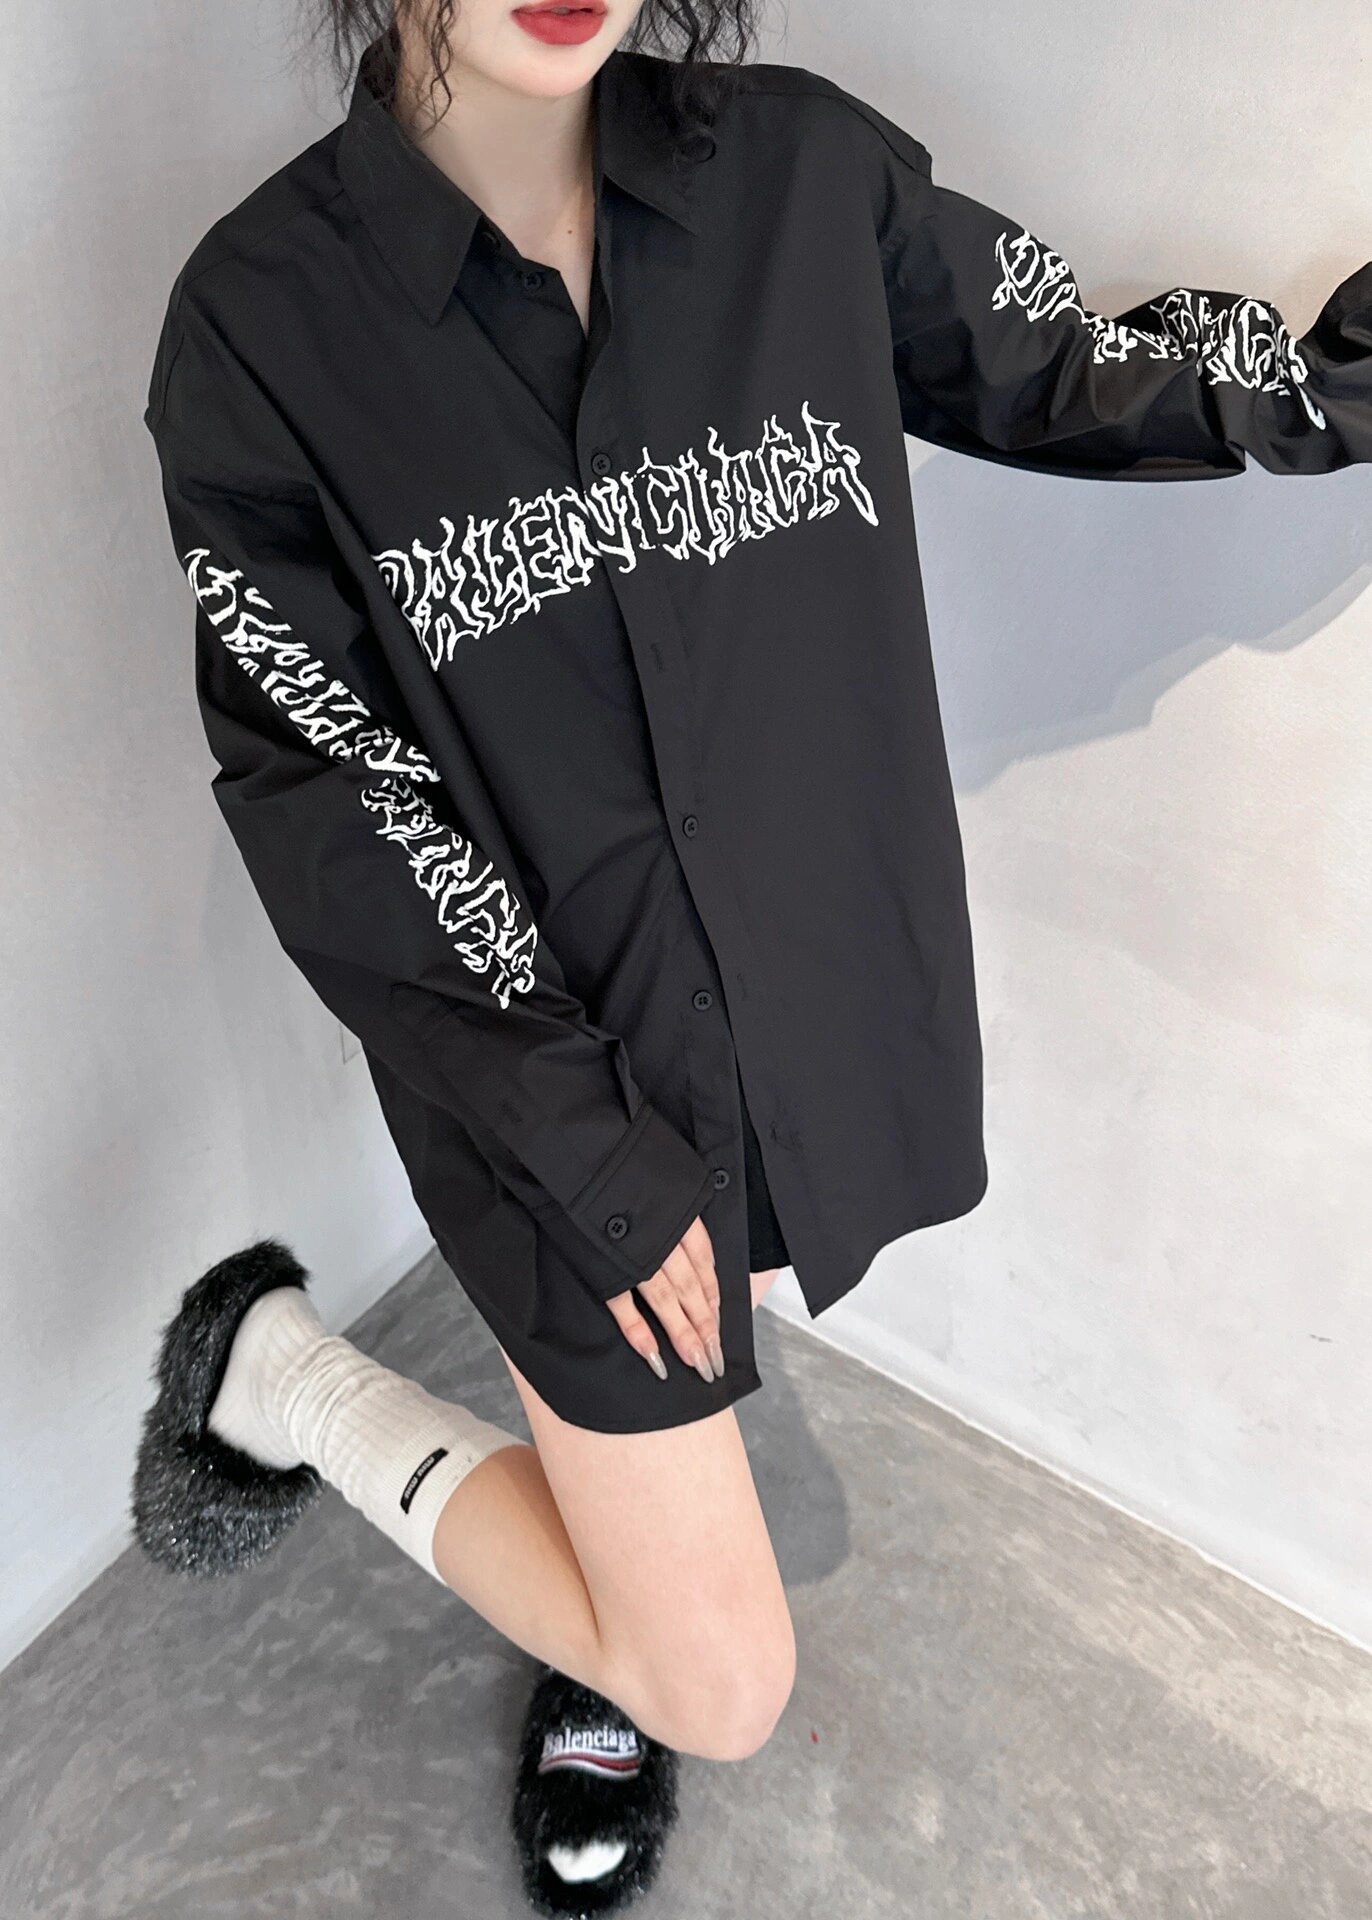 Balenciaga梵文字母衬衫面料采用高织高密天丝质感十足舒适透气以百看不腻的黑白搭配加入梵文字母作为